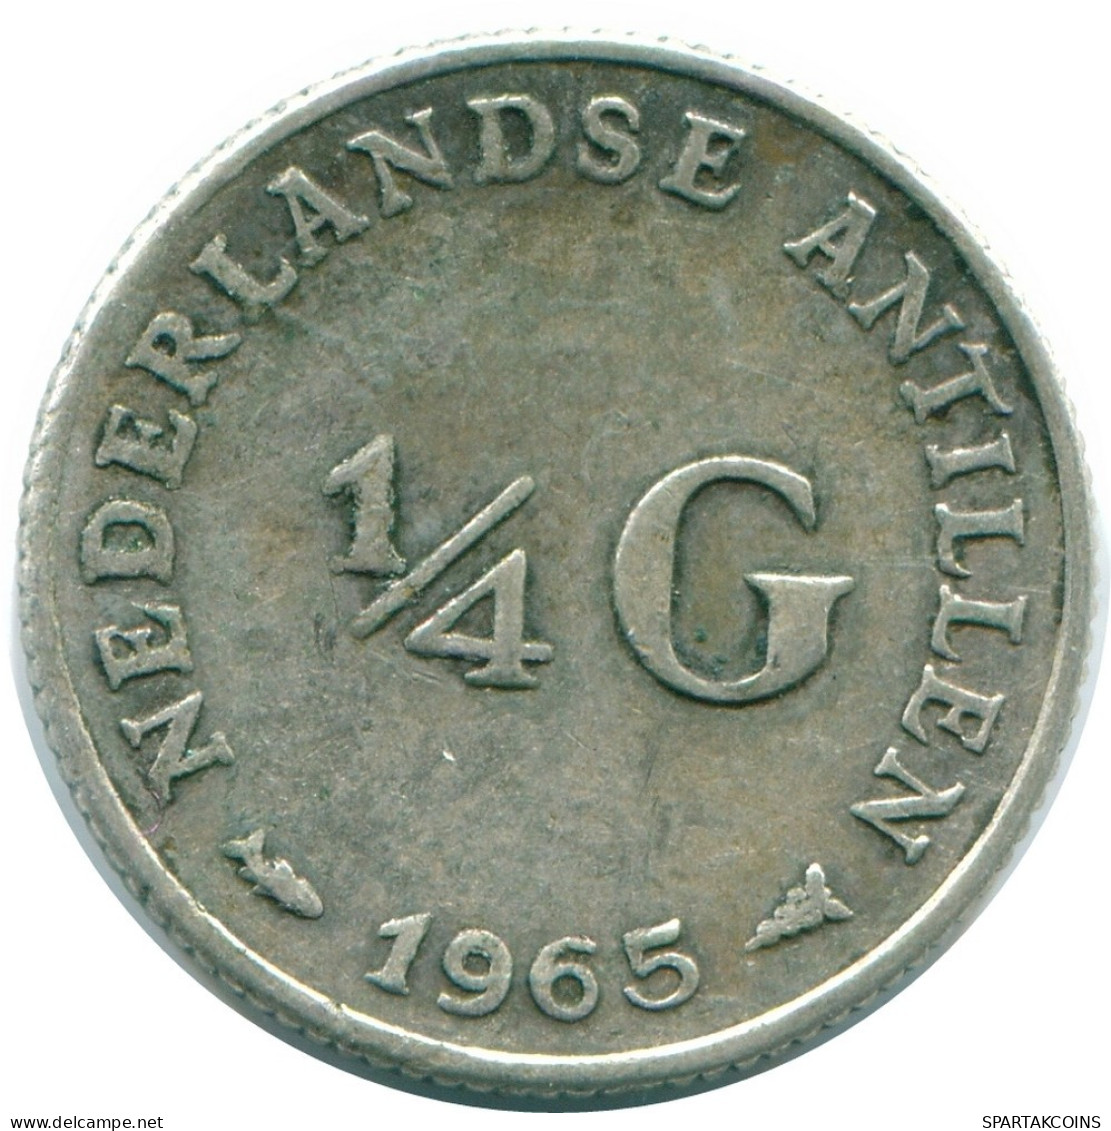 1/4 GULDEN 1965 NIEDERLÄNDISCHE ANTILLEN SILBER Koloniale Münze #NL11357.4.D.A - Antilles Néerlandaises